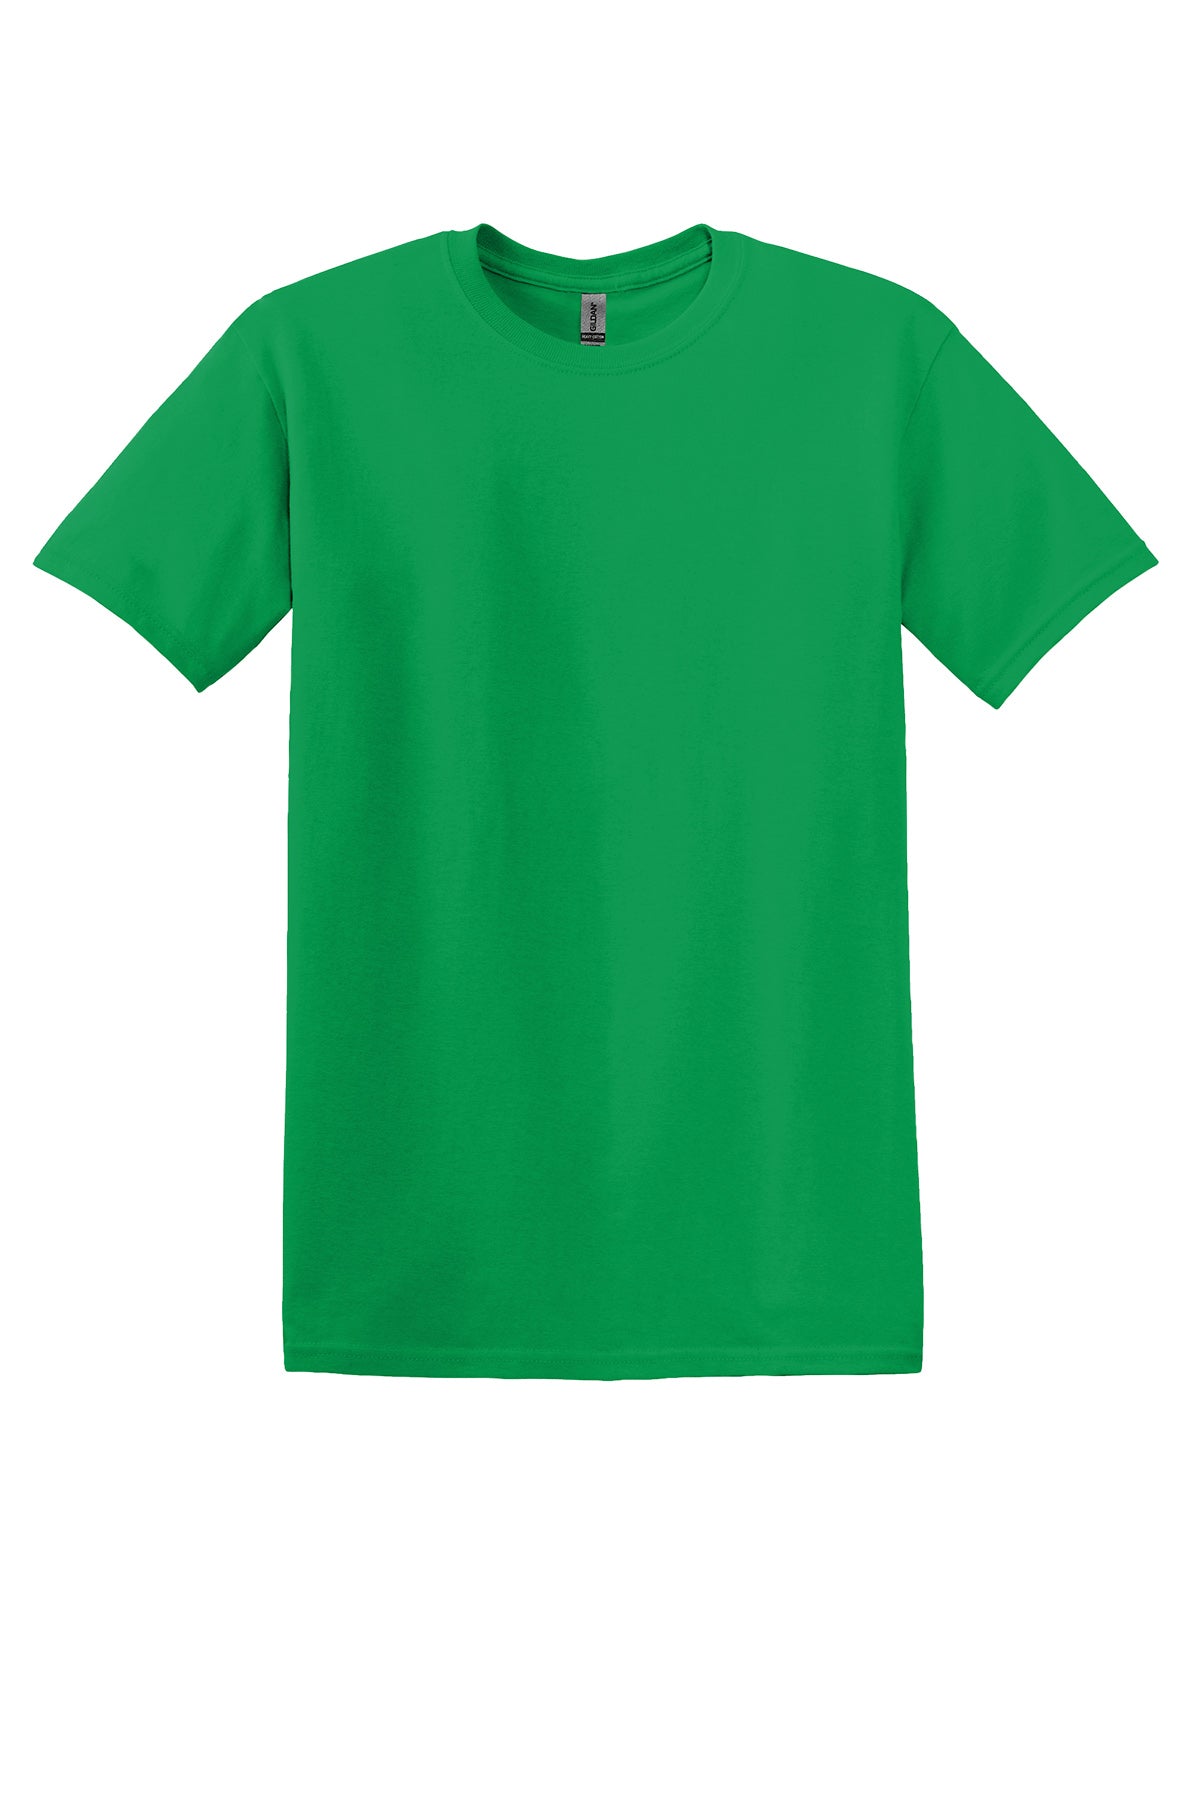 Gildan 5000 Adult T-Shirt Ad Small / Irish Green